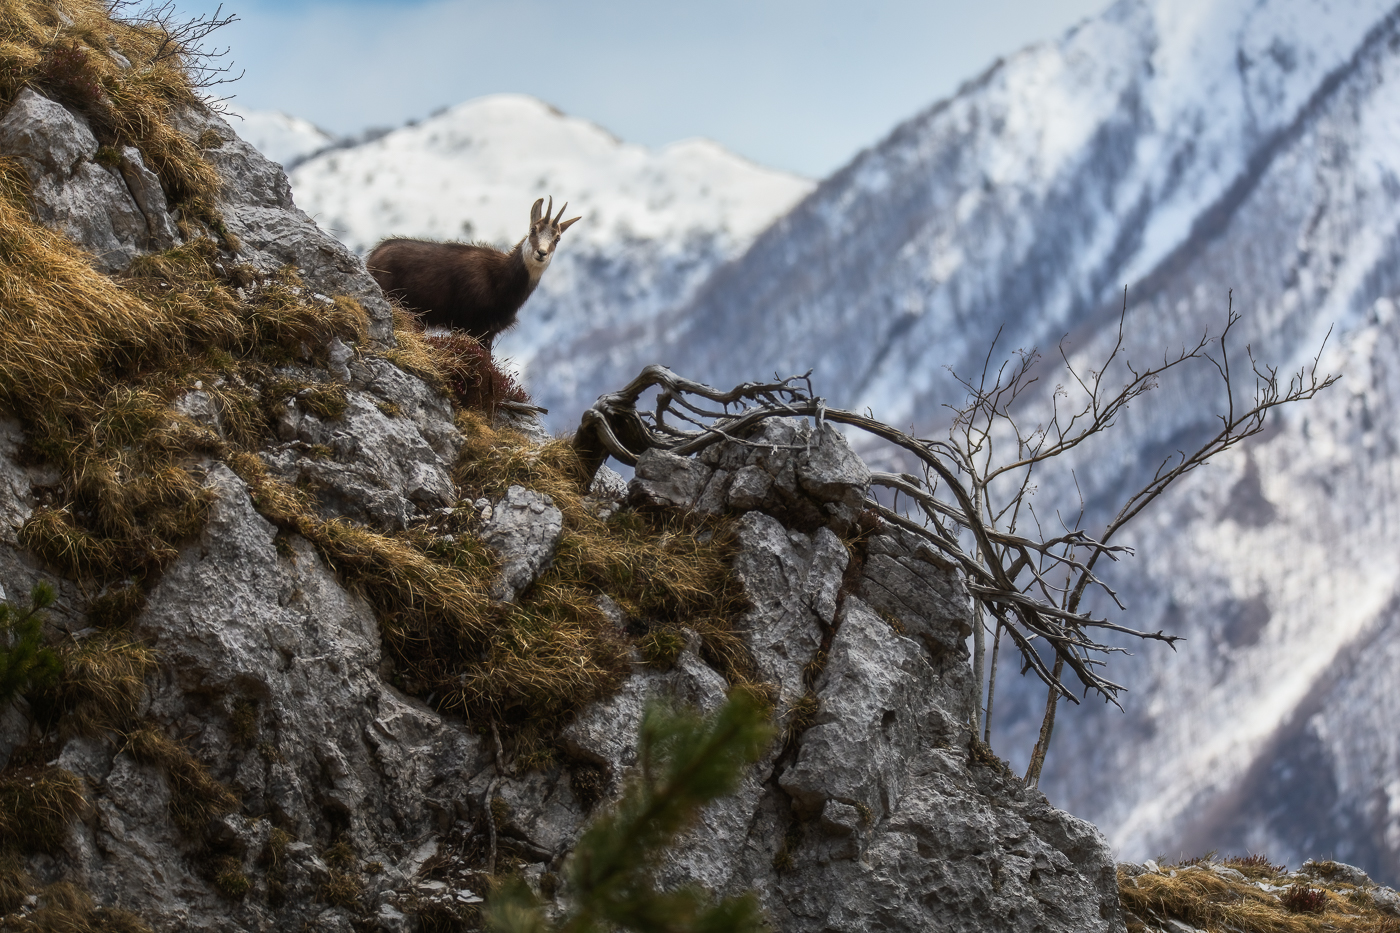 Dagli erti pendii di roccia e terrazze erbose dei gruppi montuosi delle Prealpi Giulie, ecco palesarsi un camoscio alpino (Rupicapra rupicapra). Parco Naturale Prealpi Giulie, Italia.